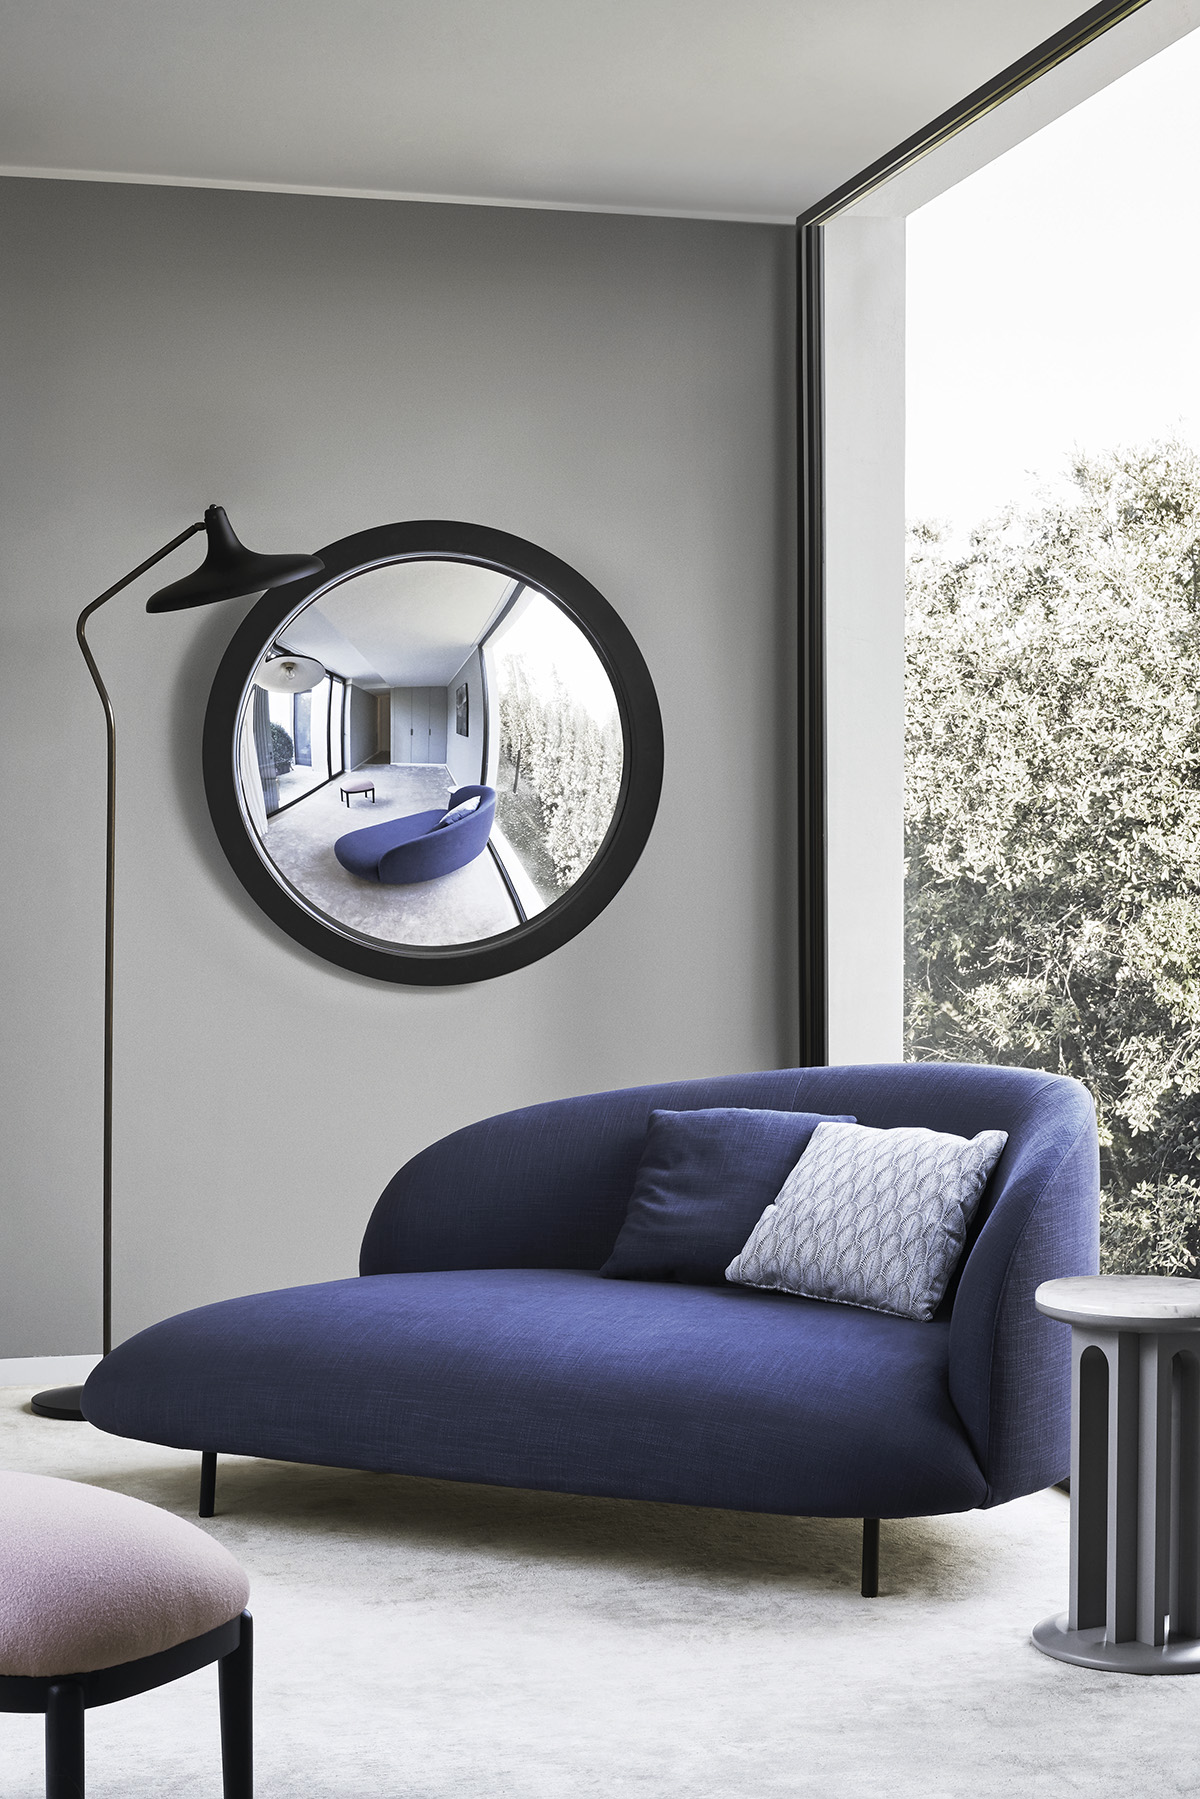 arflex-Bonsai-Sofa-design-Claesson-Koivisto-Rune-Dormeuse-Stoff-Living-Hospitality-Projekt-Luxus-zweiSitzplätze-madeinitaly-zeitgenössisch-modern